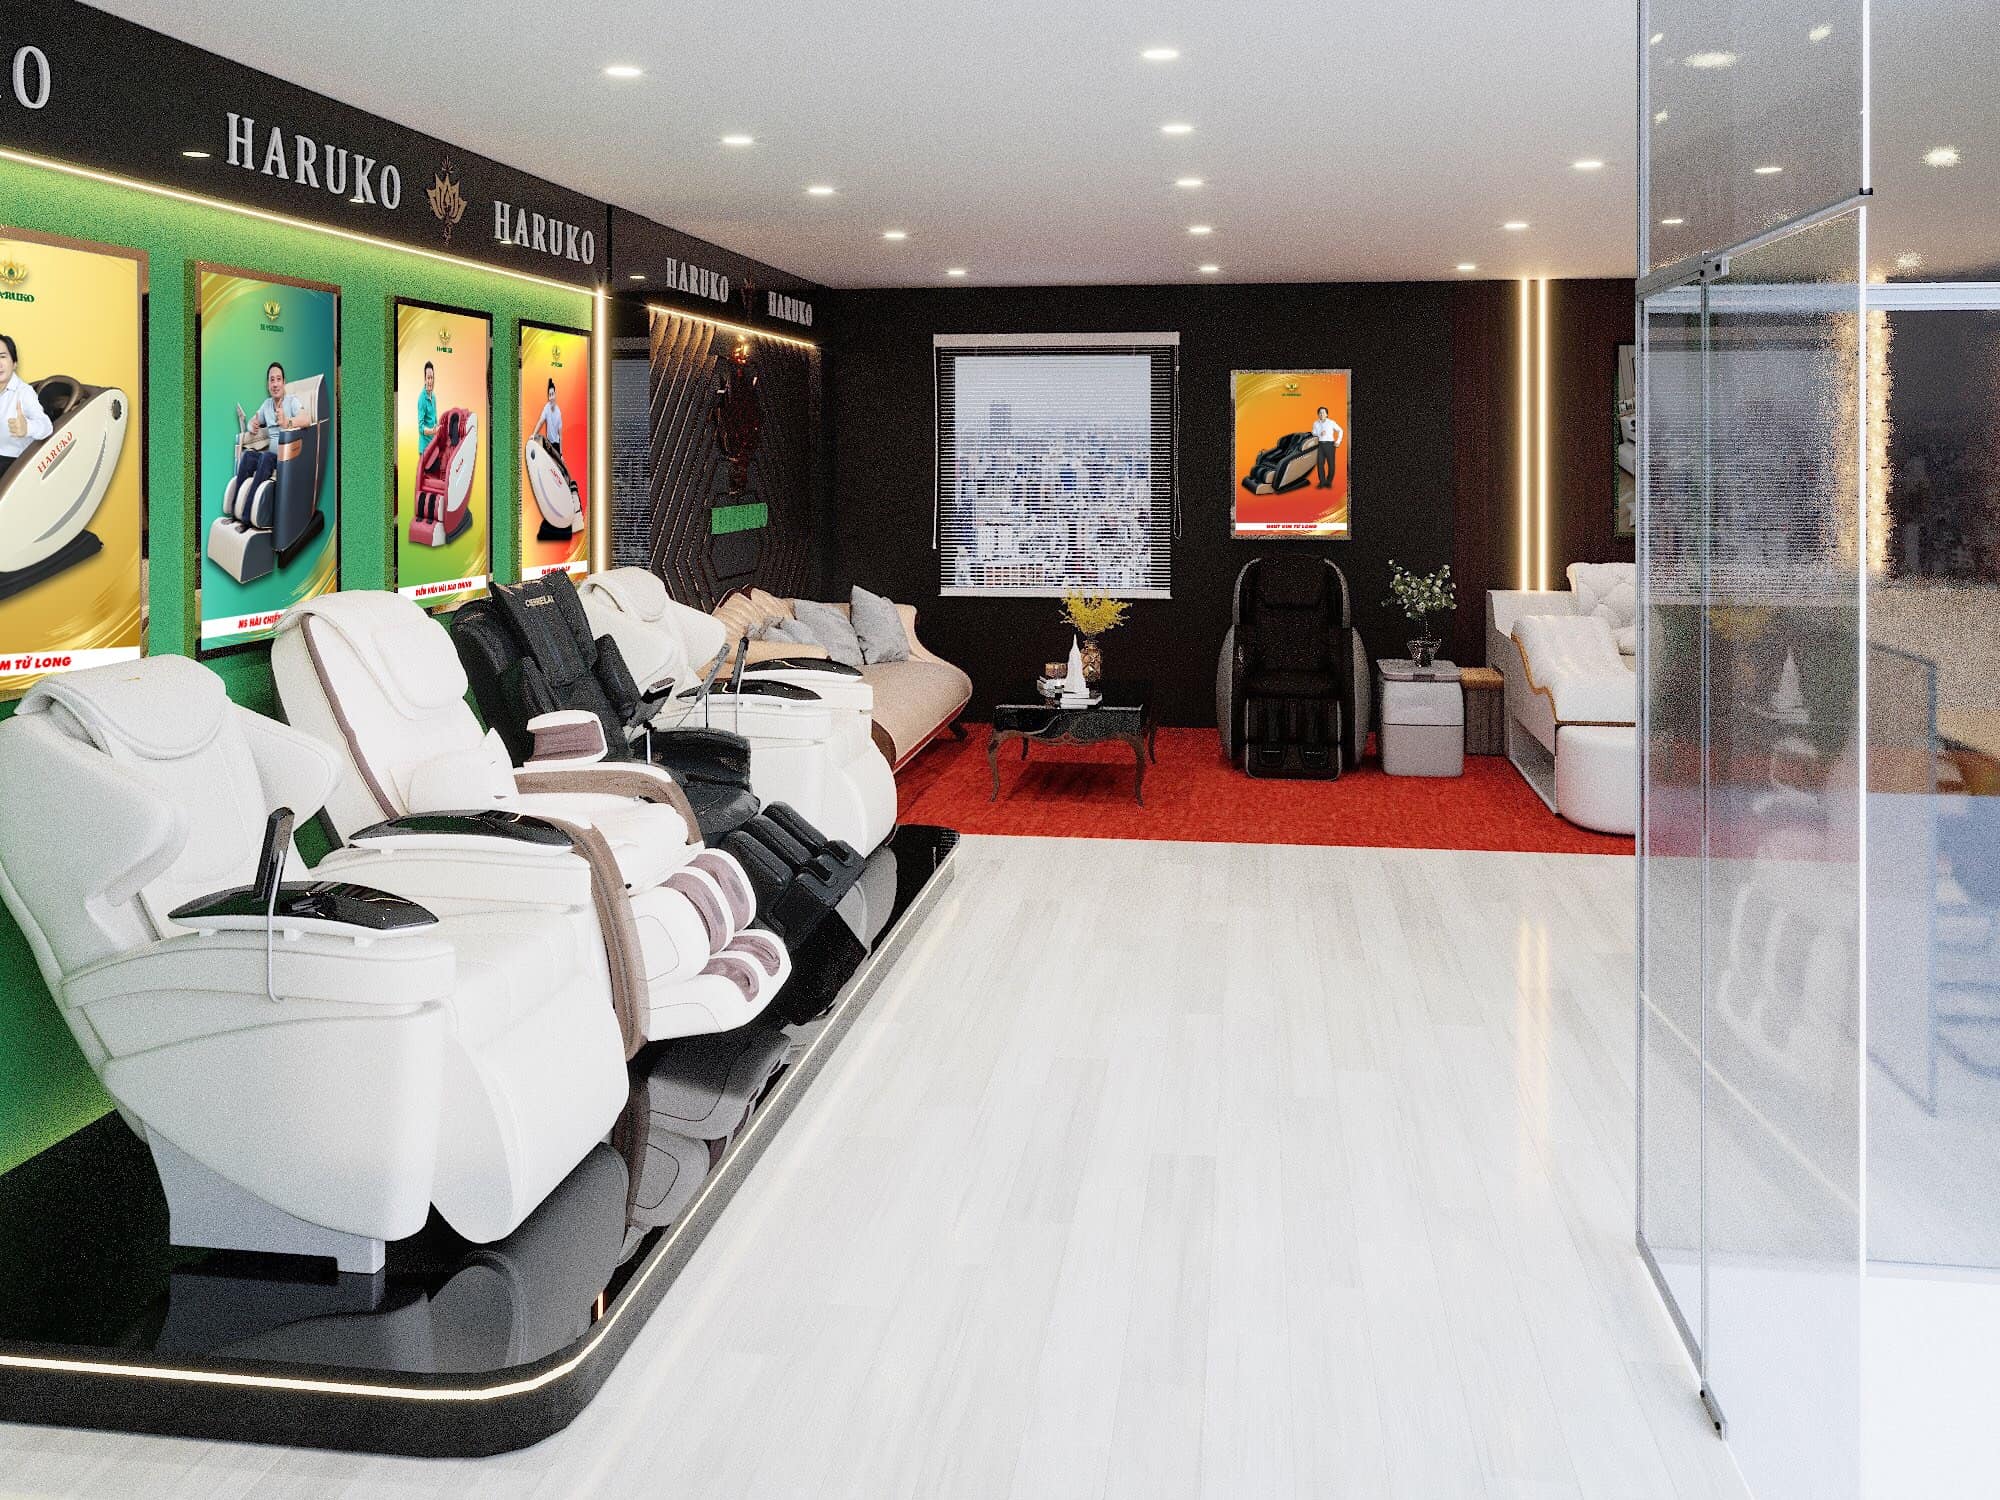 Akina là địa điểm cung cấp ghế massage hàng đầu tại Đồng Tháp được sự tin dùng từ nhiều khách hàng